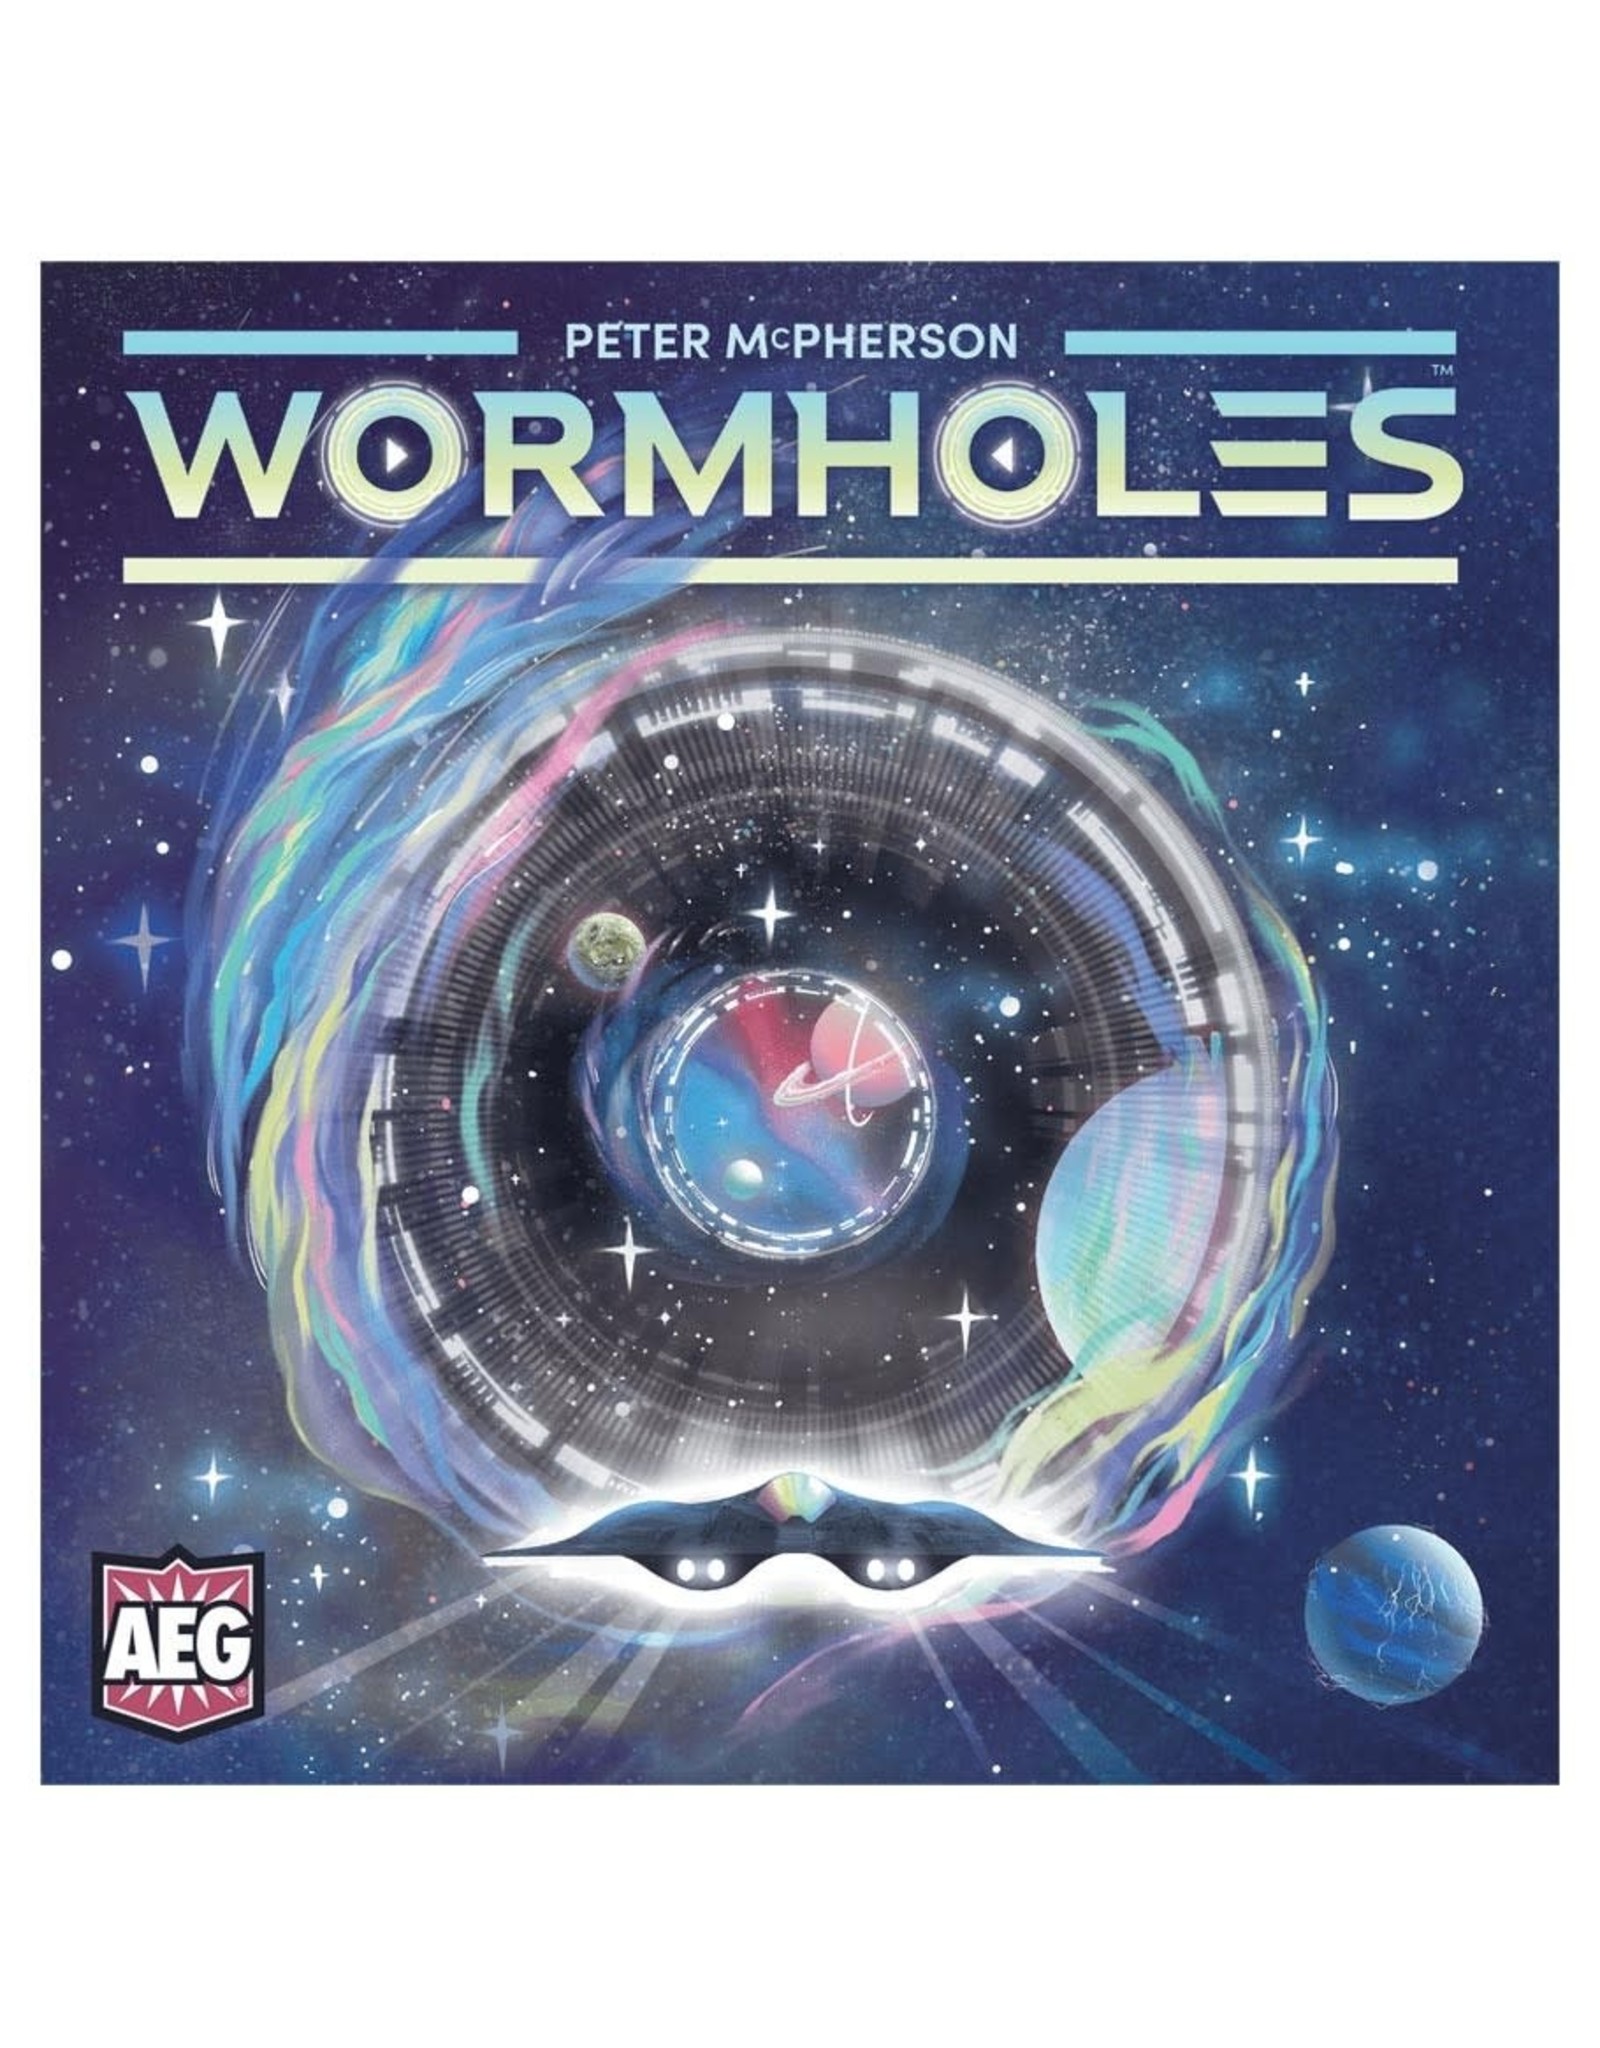 AEG Wormholes